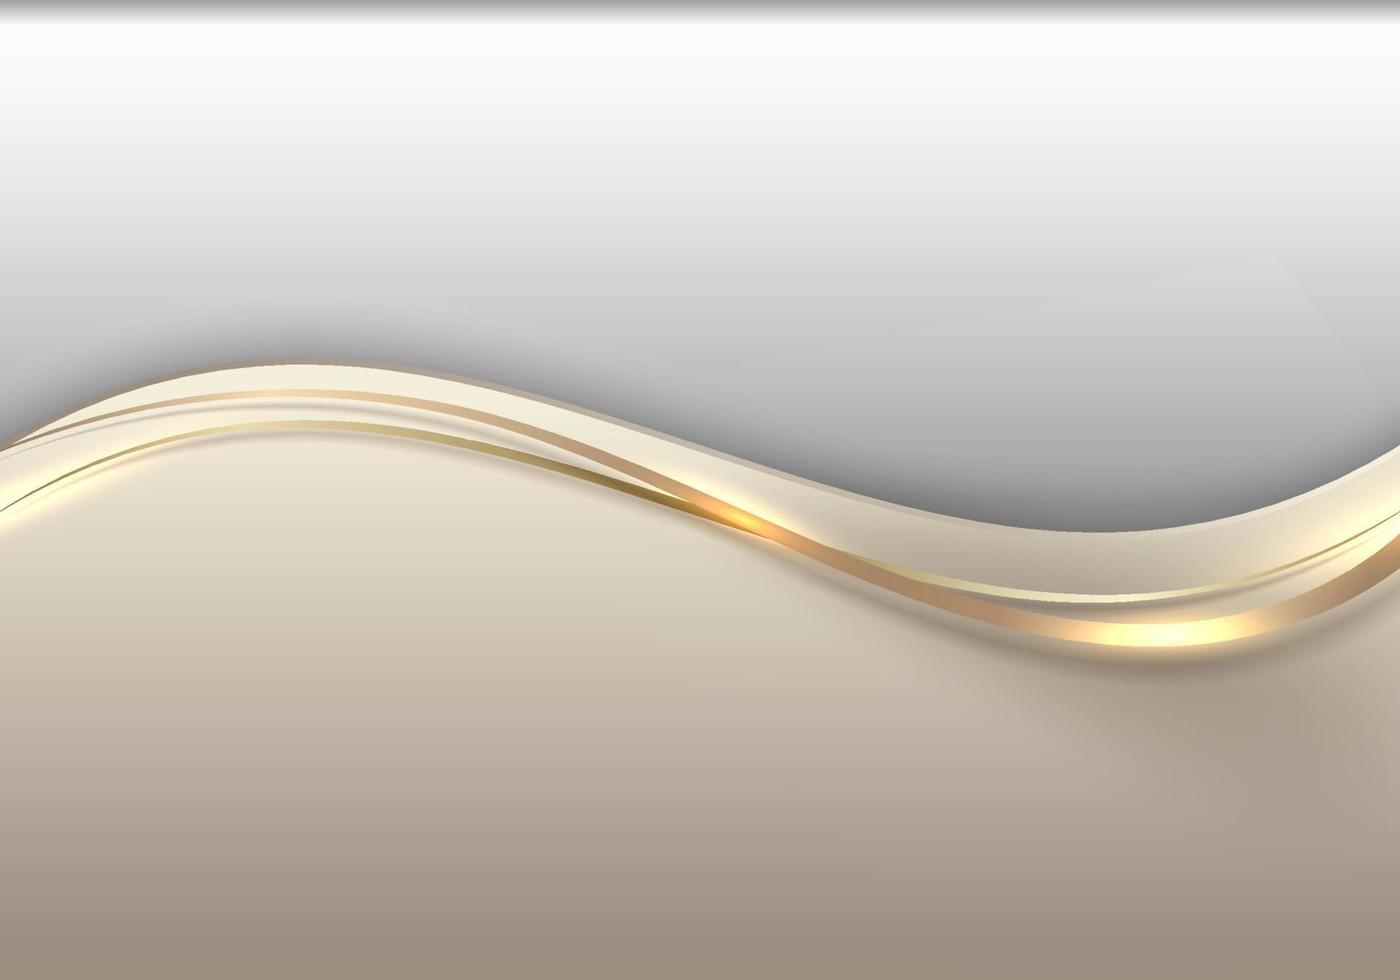 modelo abstrato 3d forma de onda dourada elegante com iluminação cintilante de linha de ouro brilhante no estilo de luxo de fundo branco vetor